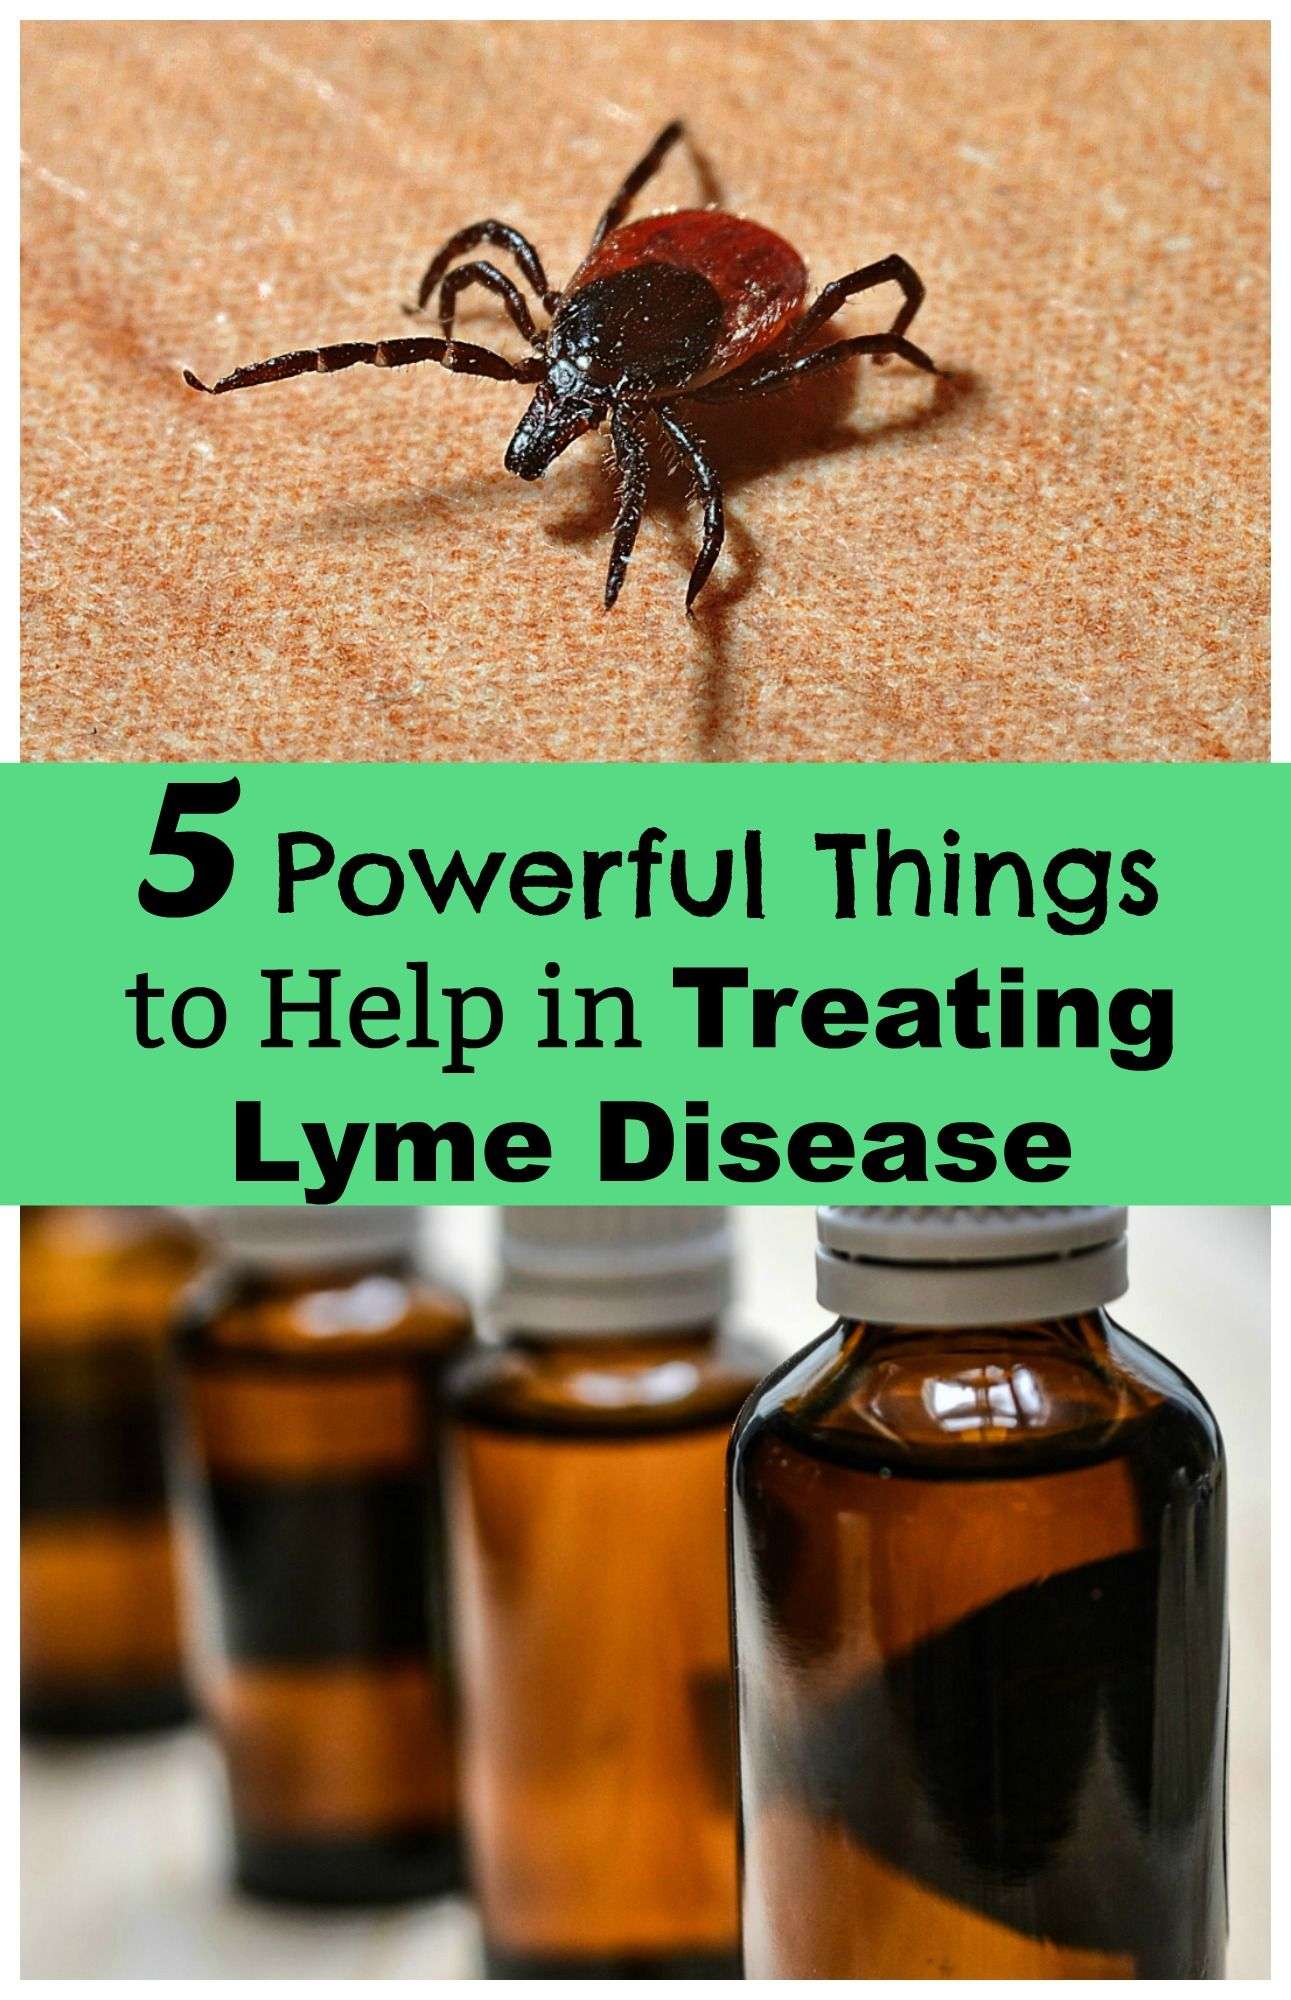 Five Powerful Things to Help in Treating Lyme Disease